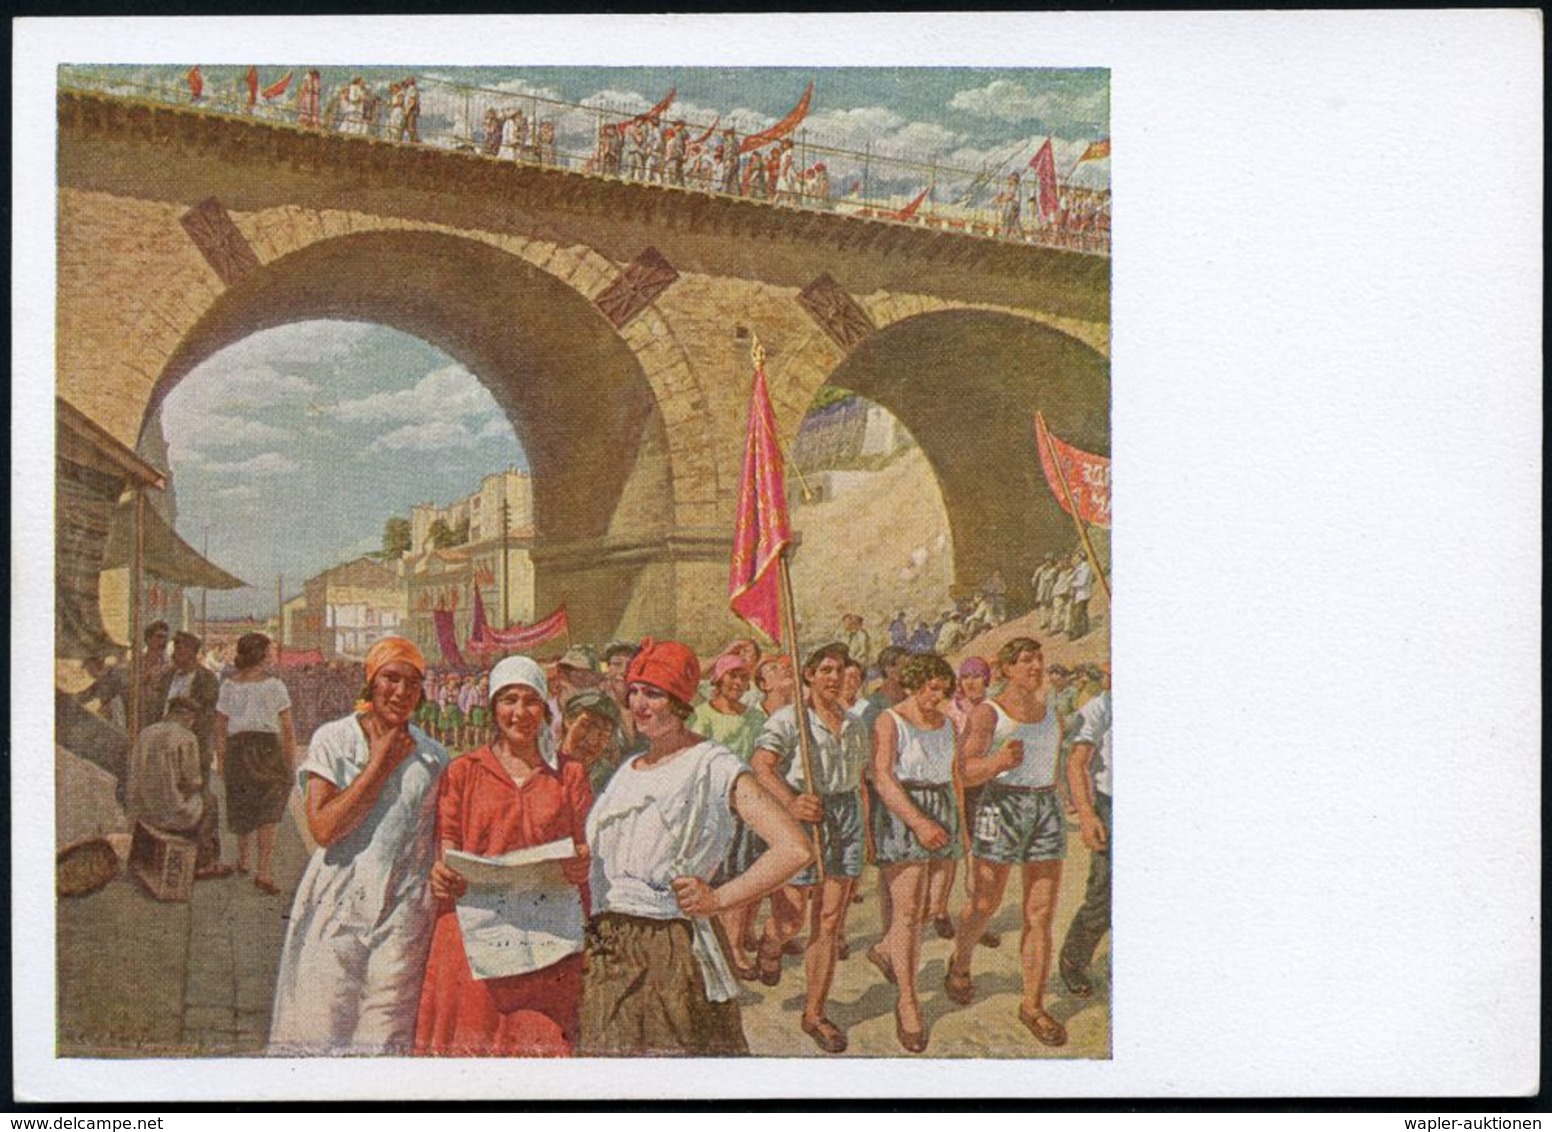 BRÜCKEN : UdSSR 1929 5 Kop BiP Soldat, Rotbraun "Revolutions-Museum": 1. Mai In Odessa = Bahn-Viadukt = Gemälde V. S.Lup - Ponti